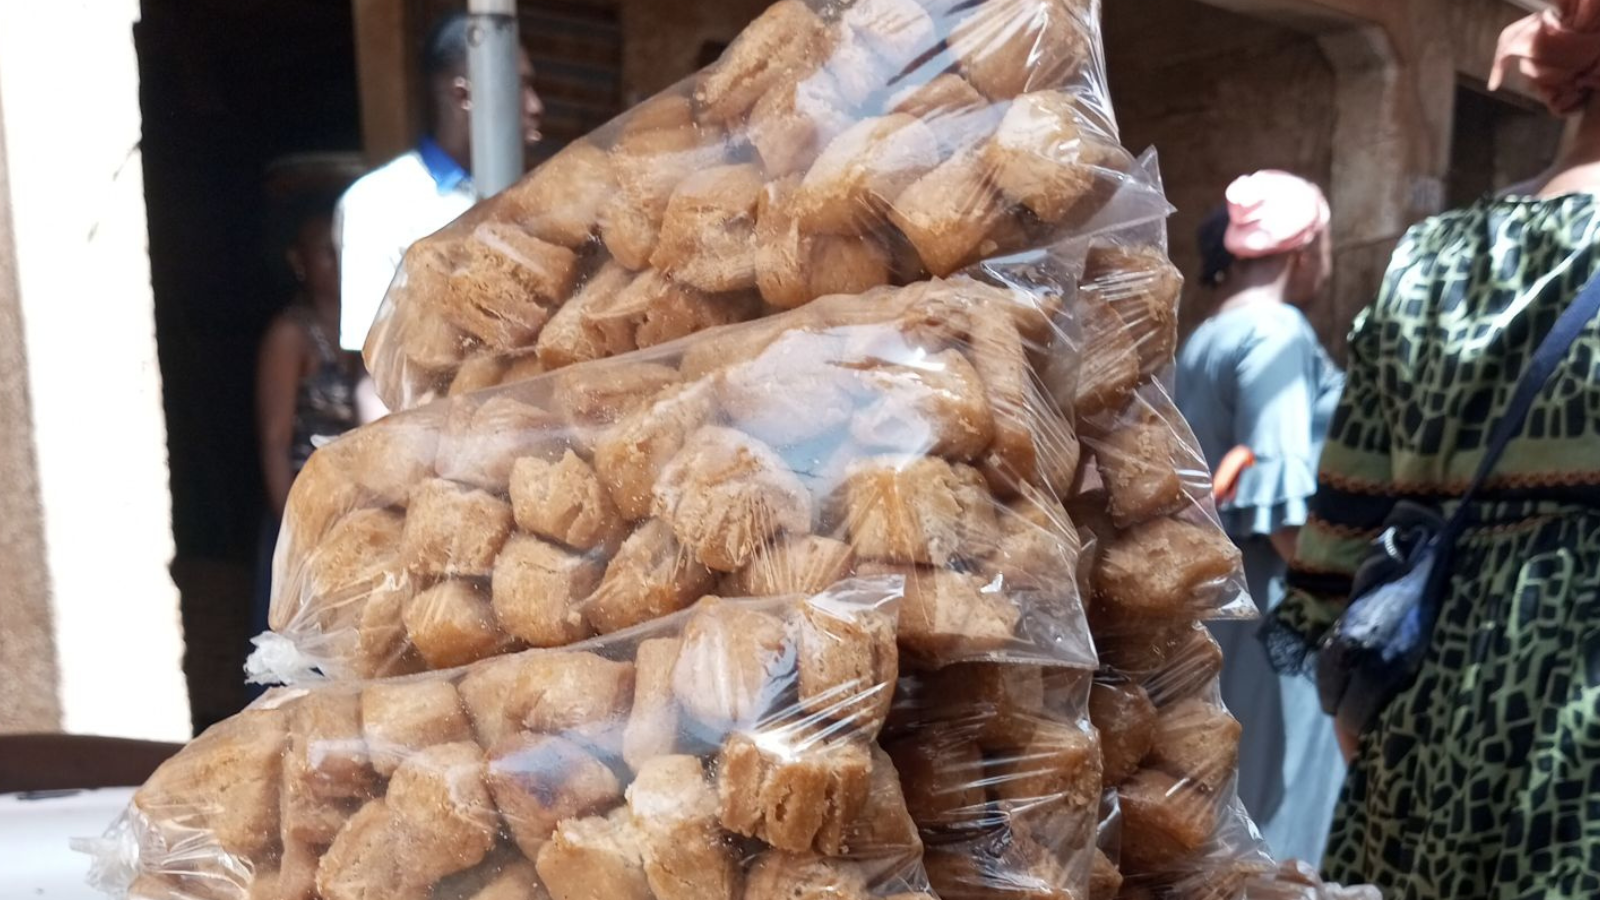 A Ouagadougou, la rue des gâteaux ou la recette contre la pauvreté au quartier Dapoya